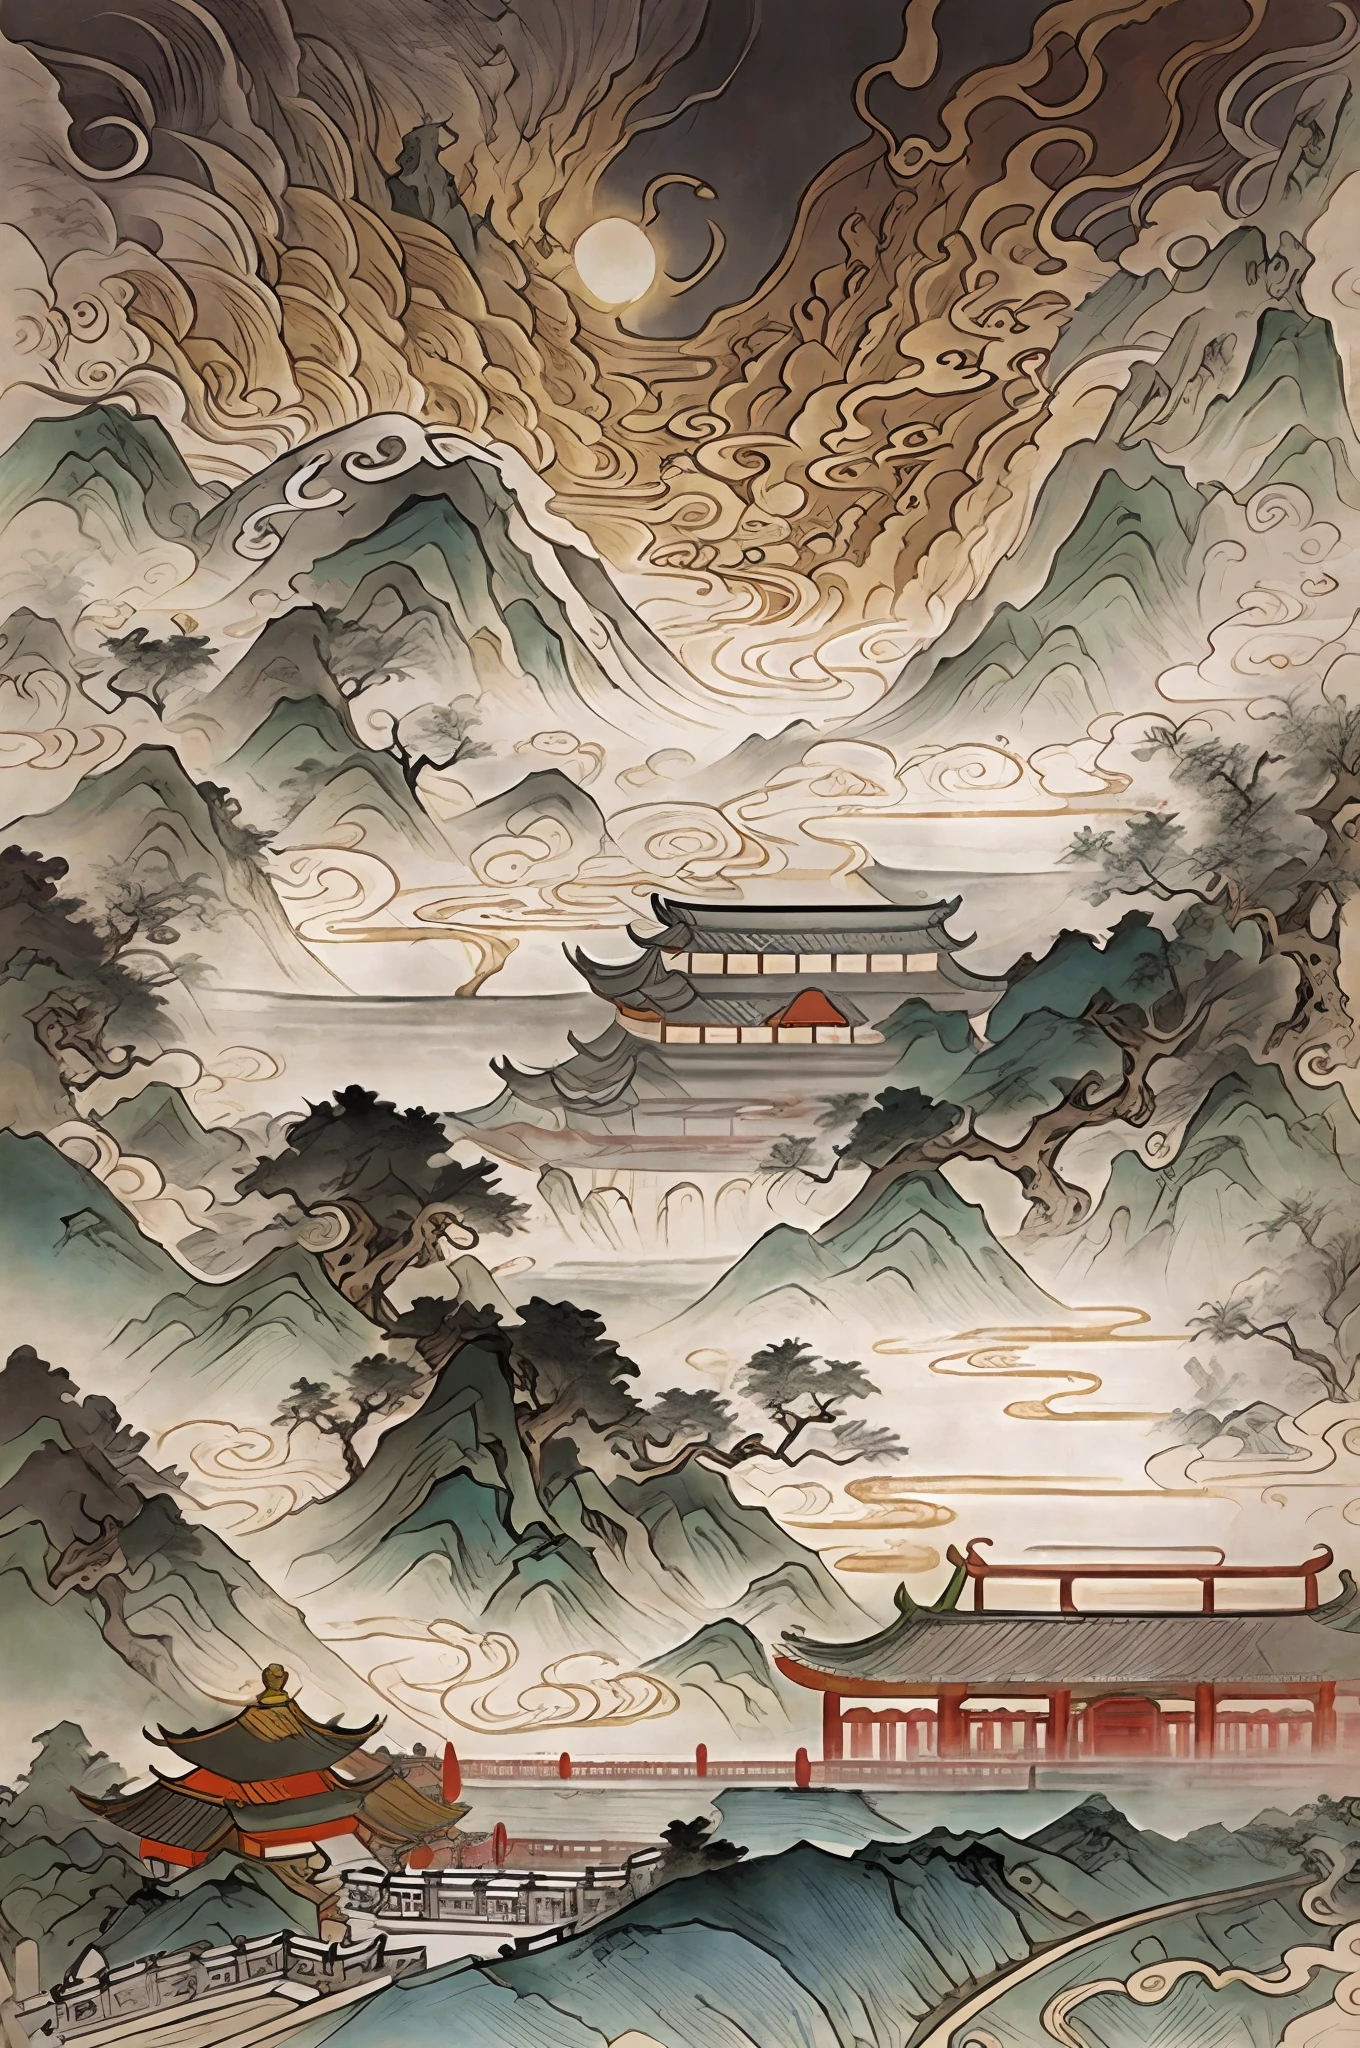 Zeichne eine Landschaft，alte chinesische Legenden，Depressiver und wütender Stil，In der Ferne gibt es einen Berg und eine Pagode, inspiriert von Itō Jakuchū, chinesische landschaft, orientalische Tapete